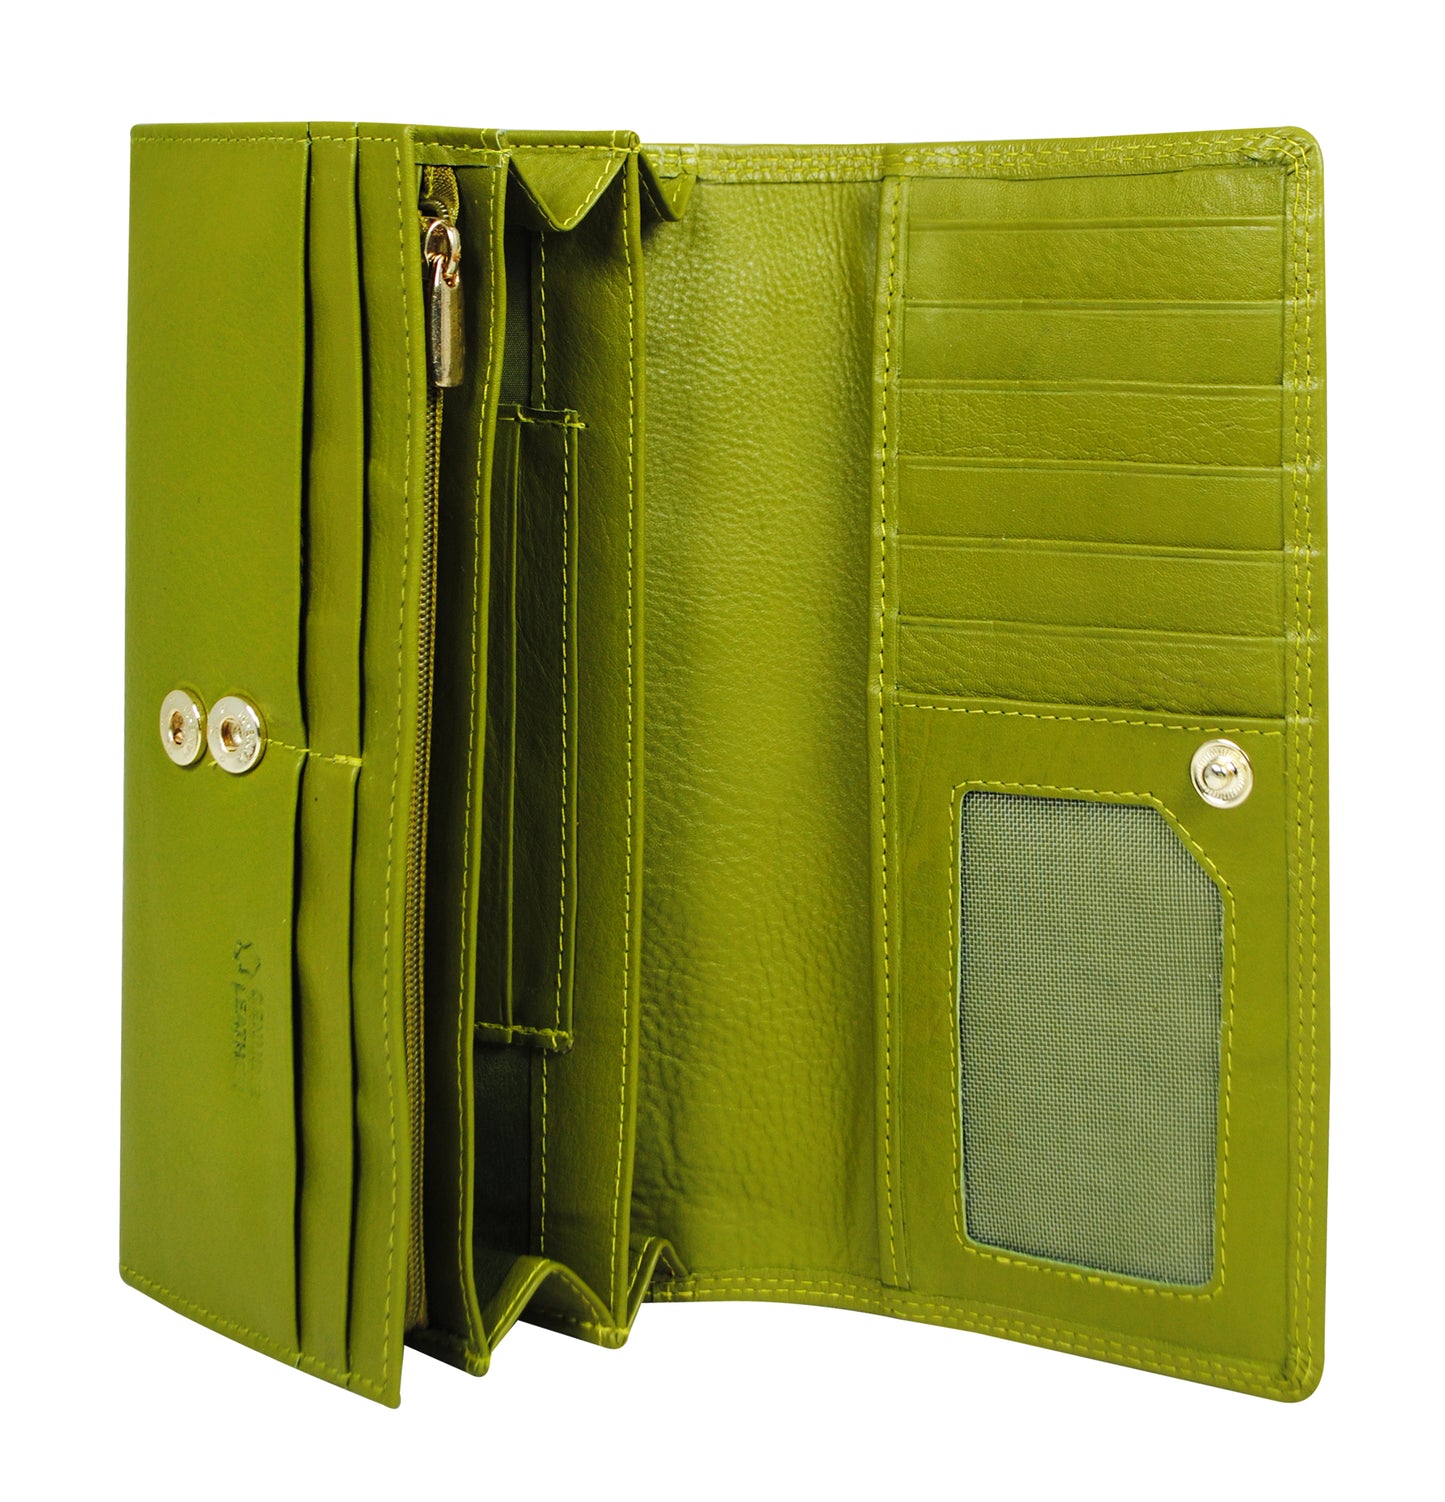 Calfnero Genuine Leather Women's Wallet (12314-Dark-Green)